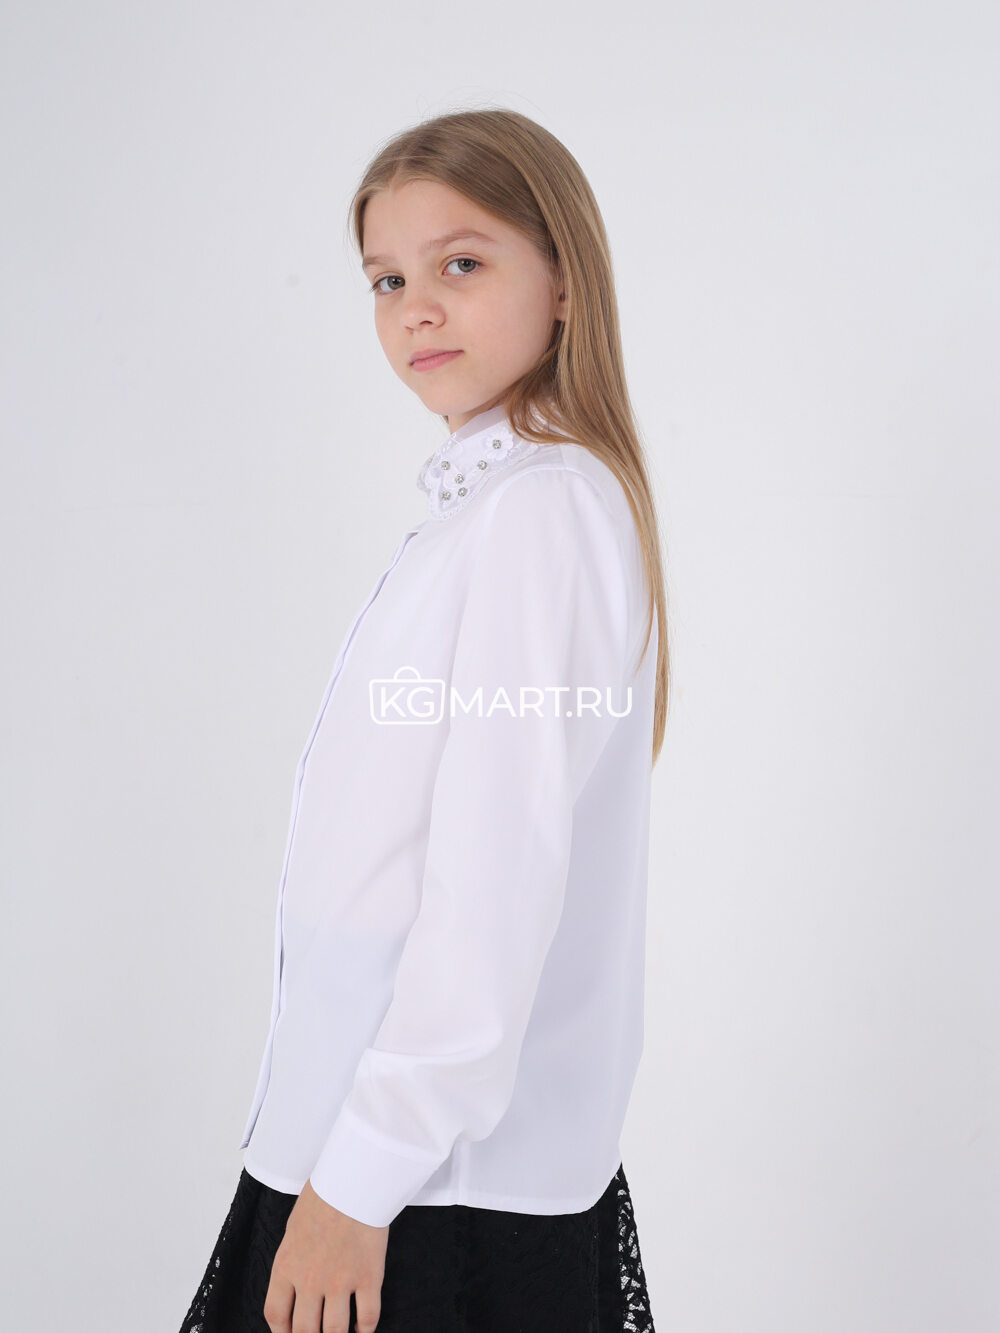 Школьная форма, блузка арт.347476